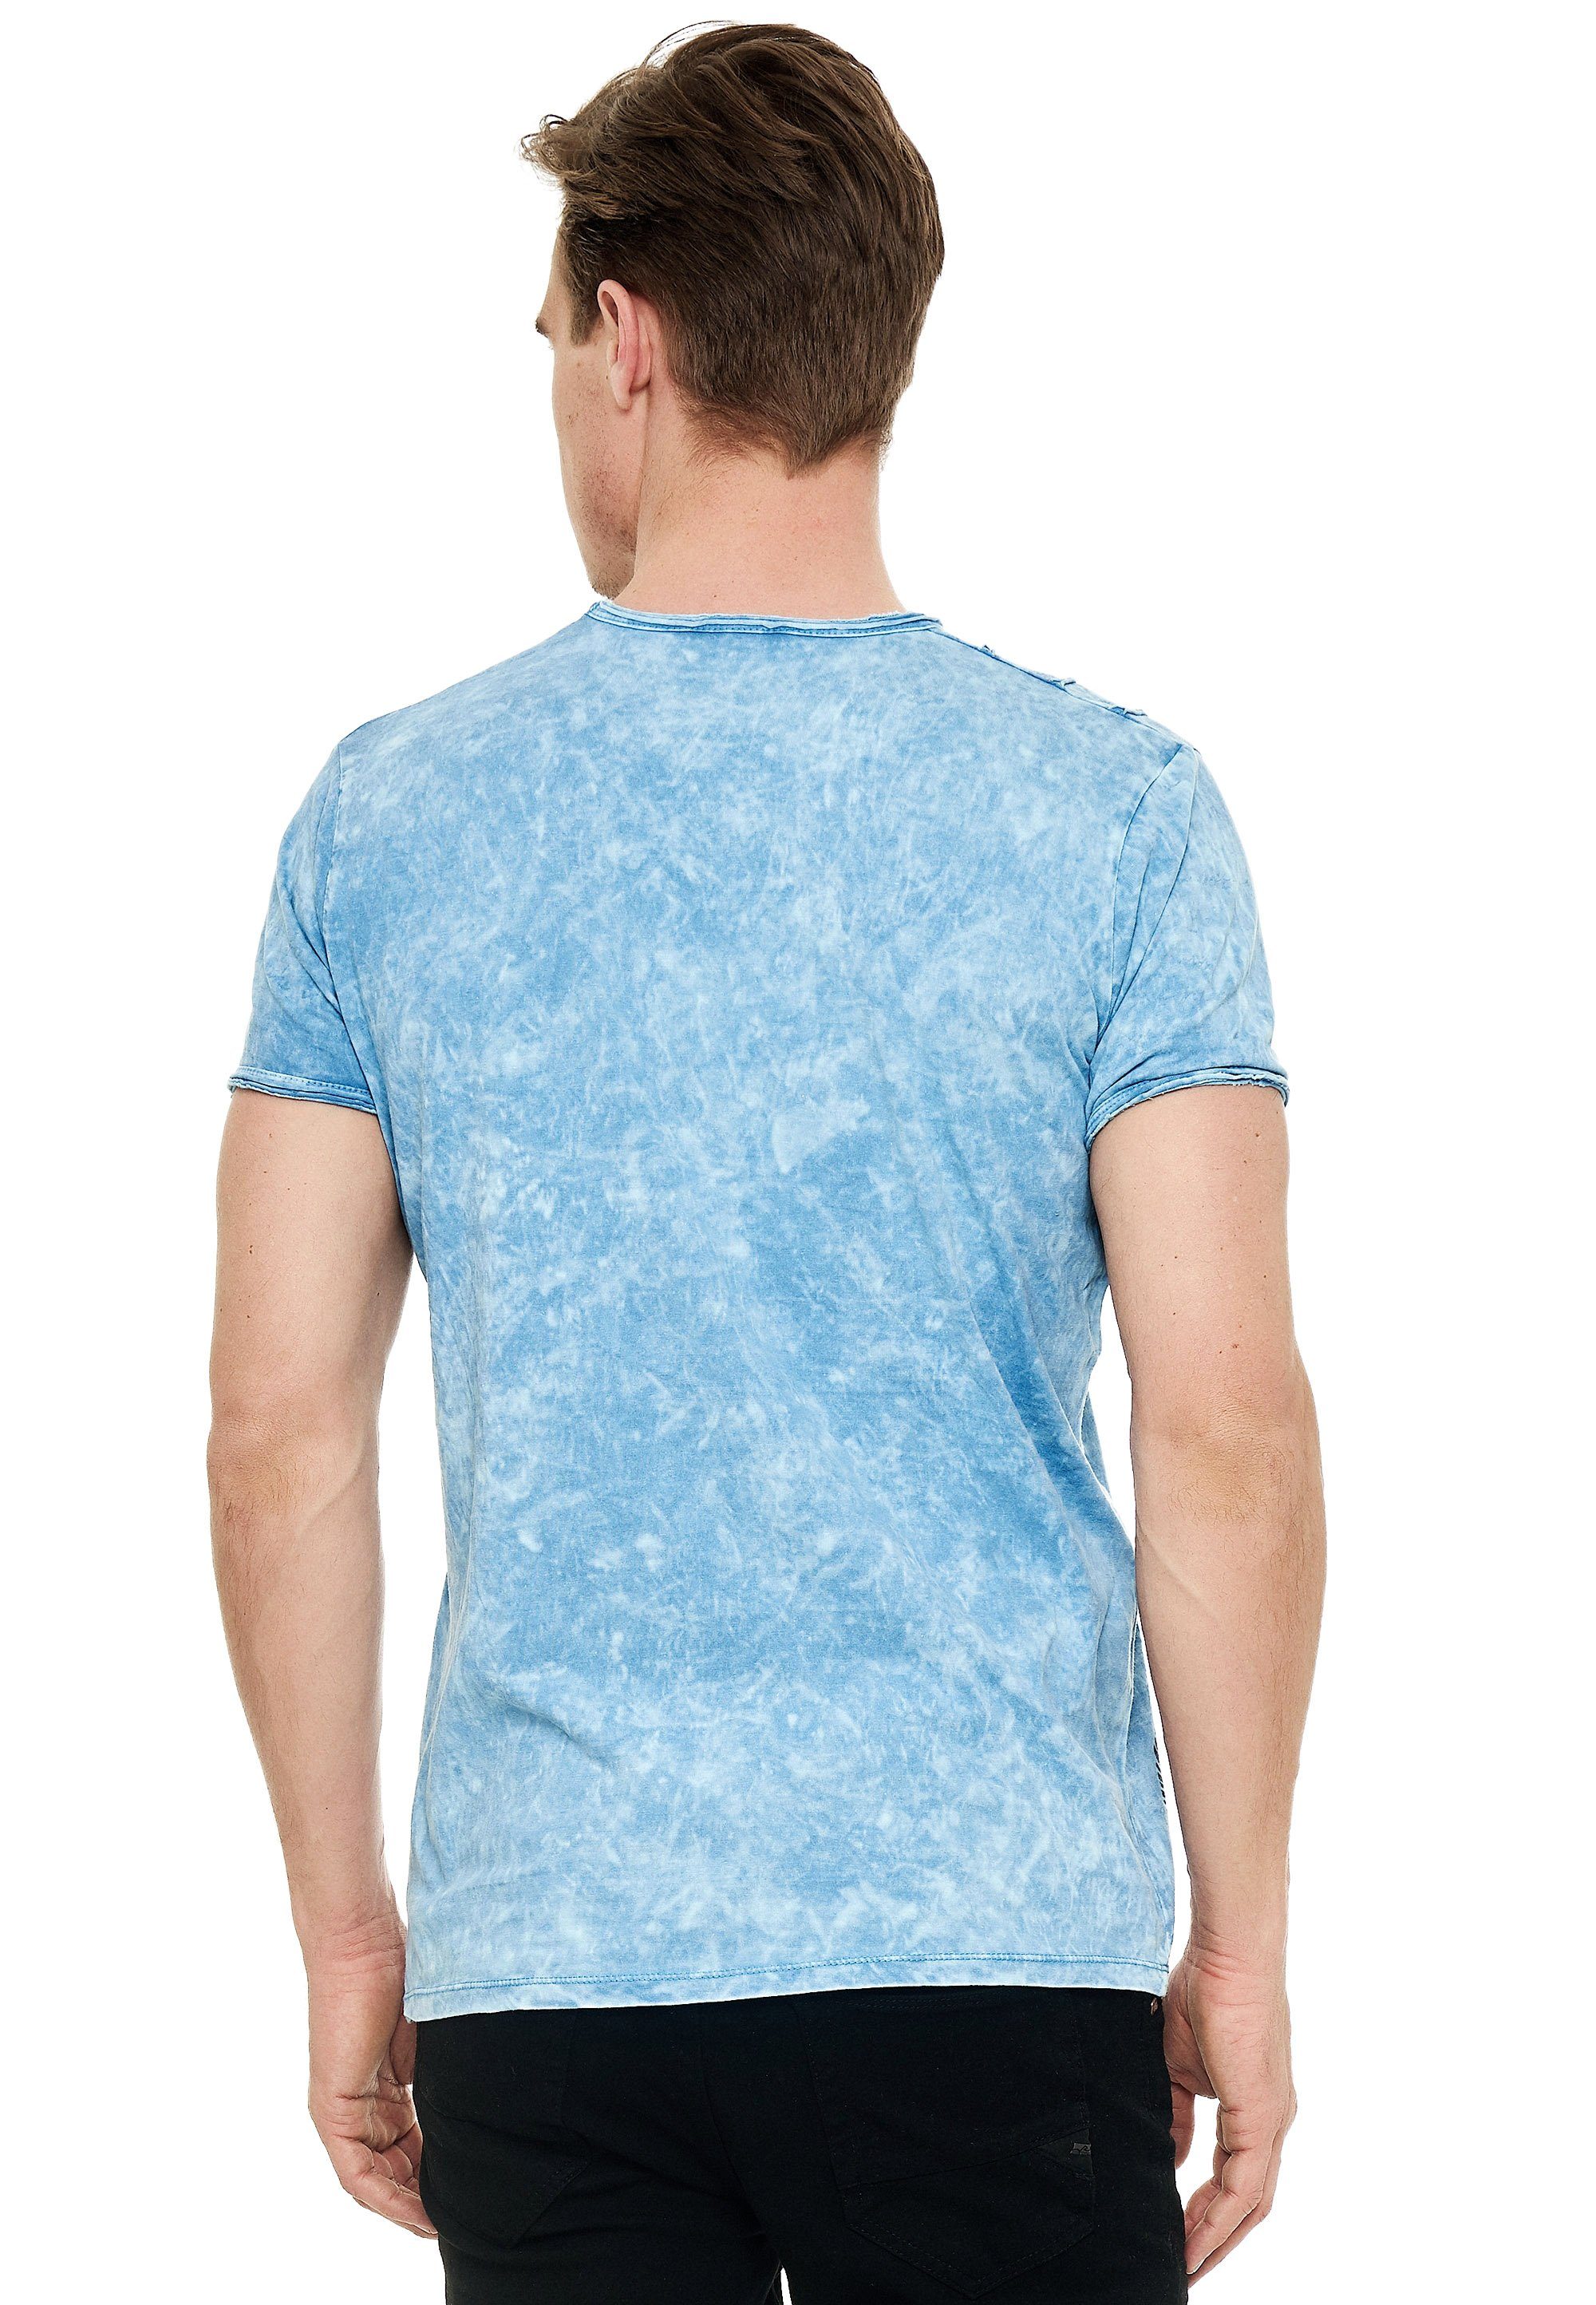 Rusty Print eindrucksvollem T-Shirt hellblau mit Neal